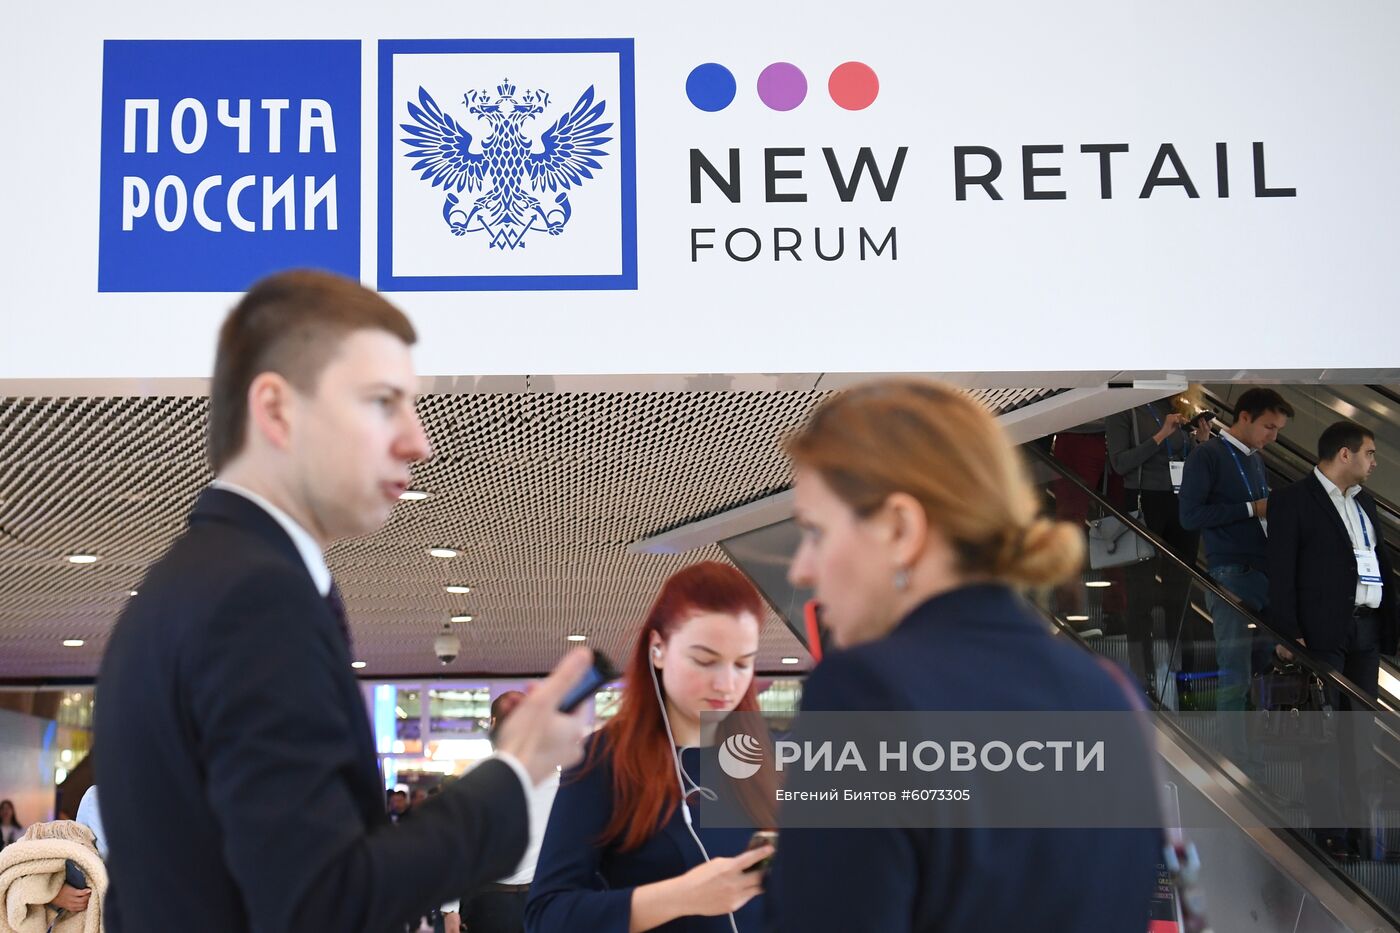 Форум New Retail Forum. Почта России